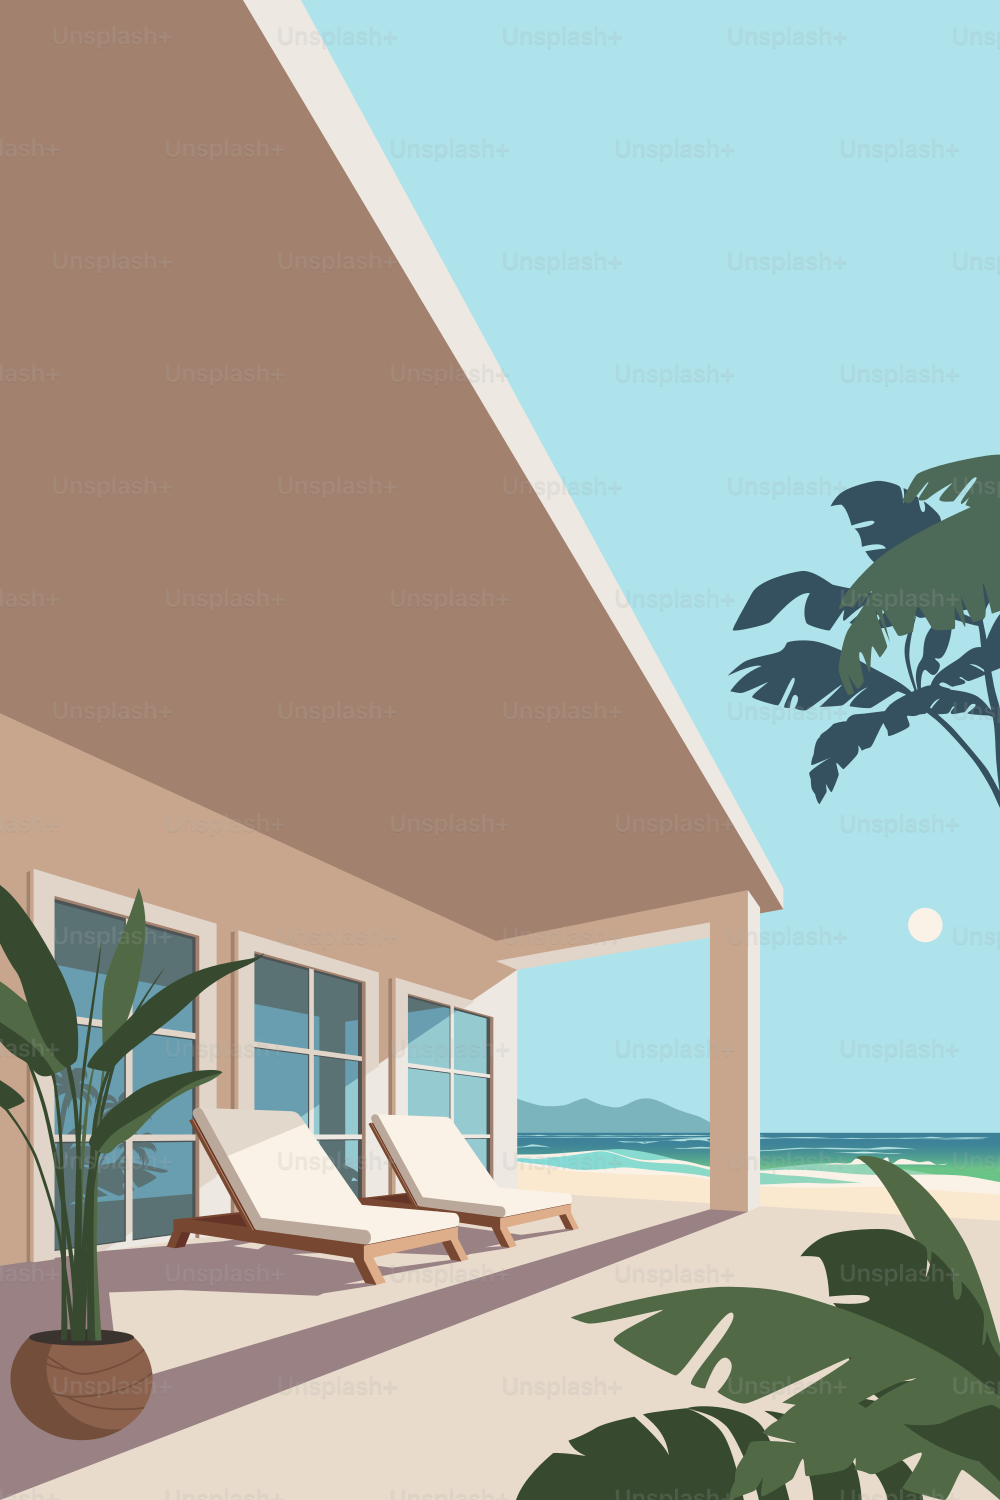 Due comode sedie a sdraio sulla terrazza in riva all'oceano. Villa in riva al mare. Palme e spiaggia sabbiosa sotto i raggi del sole tropicale. Località turistica per fare una pausa.